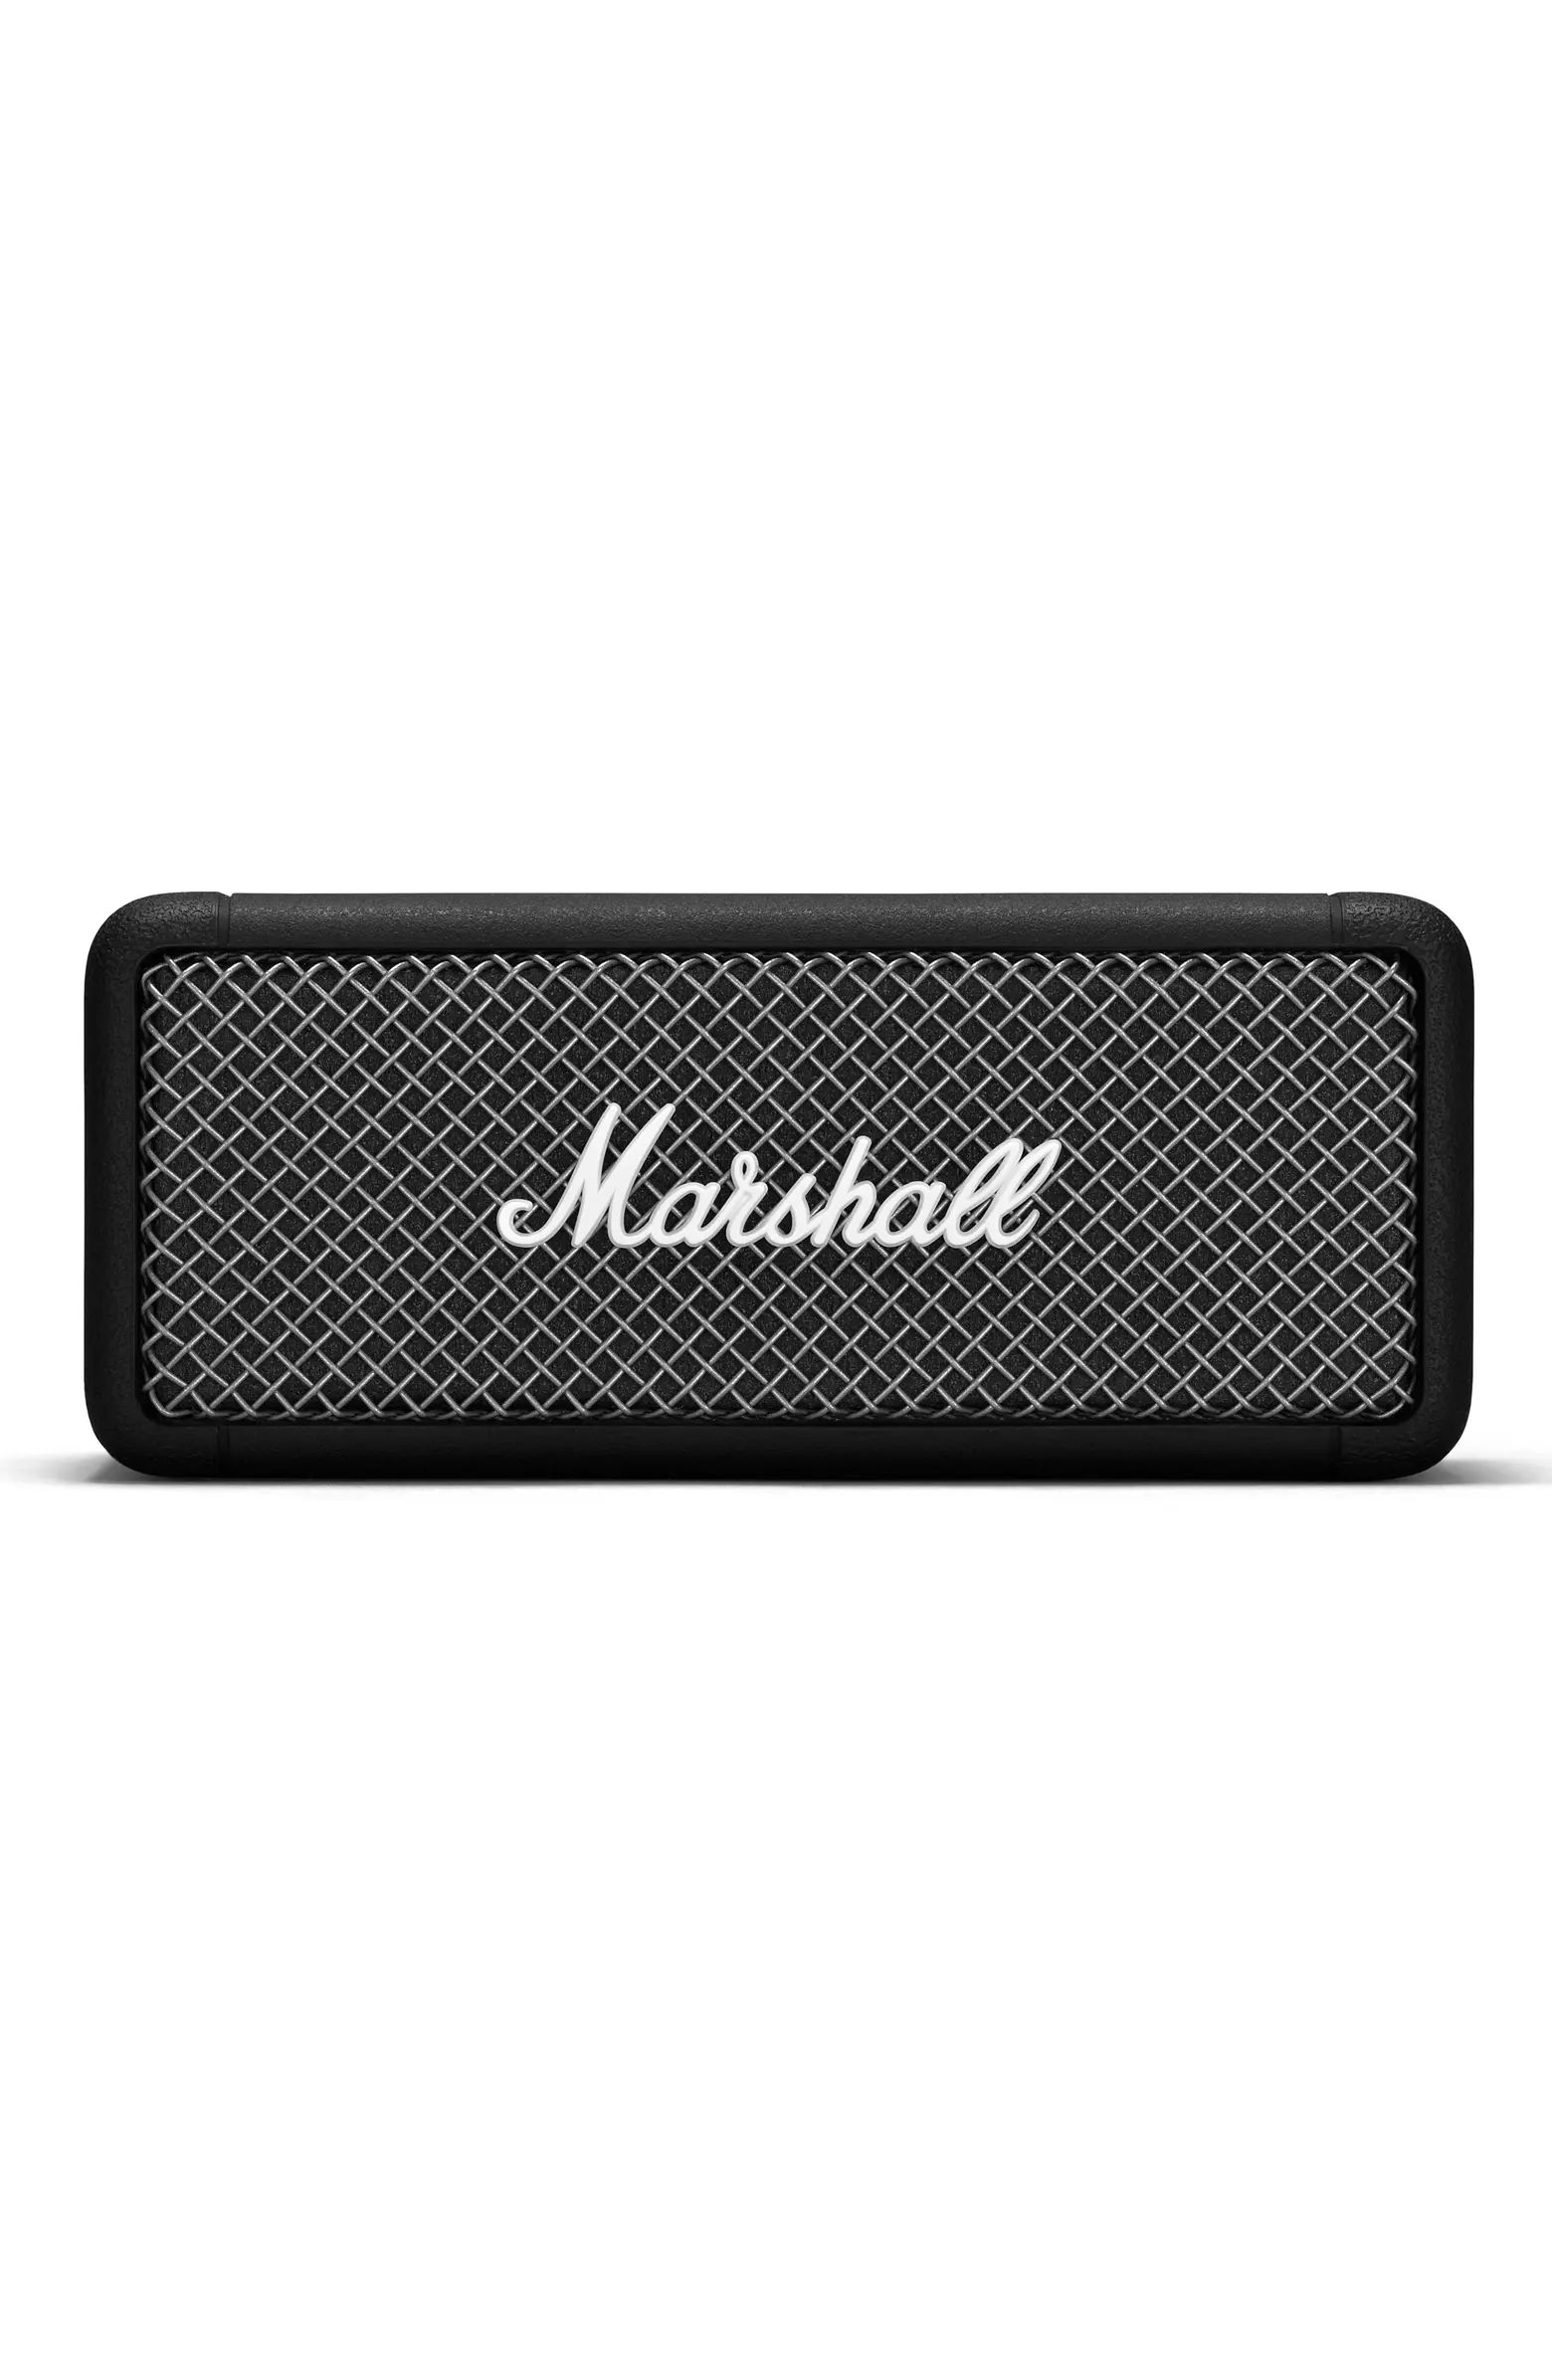 Marshall Emberton Portable Speaker | Nordstrom | Nordstrom